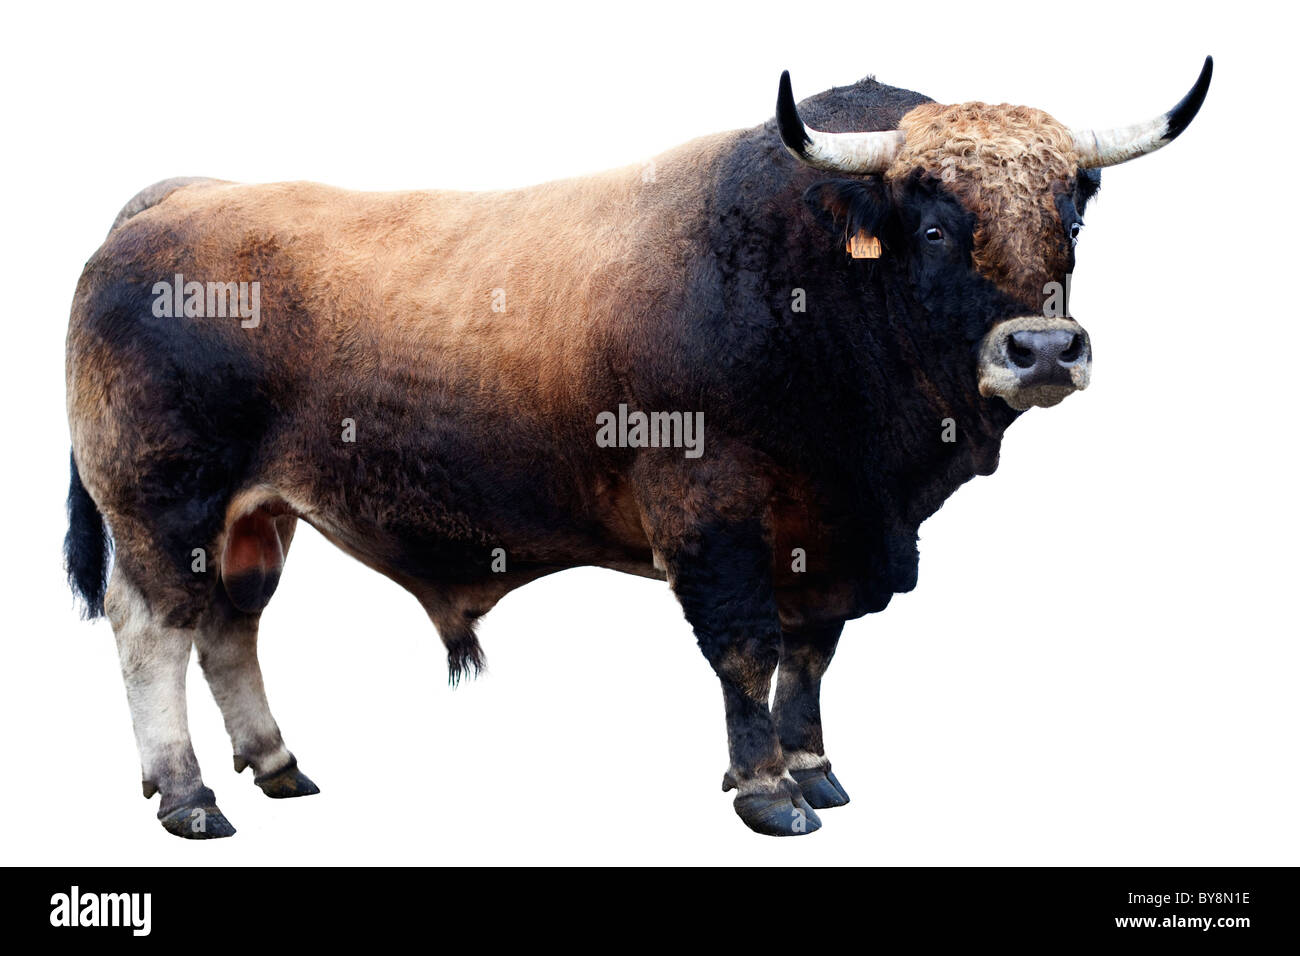 Bull Stock Photo